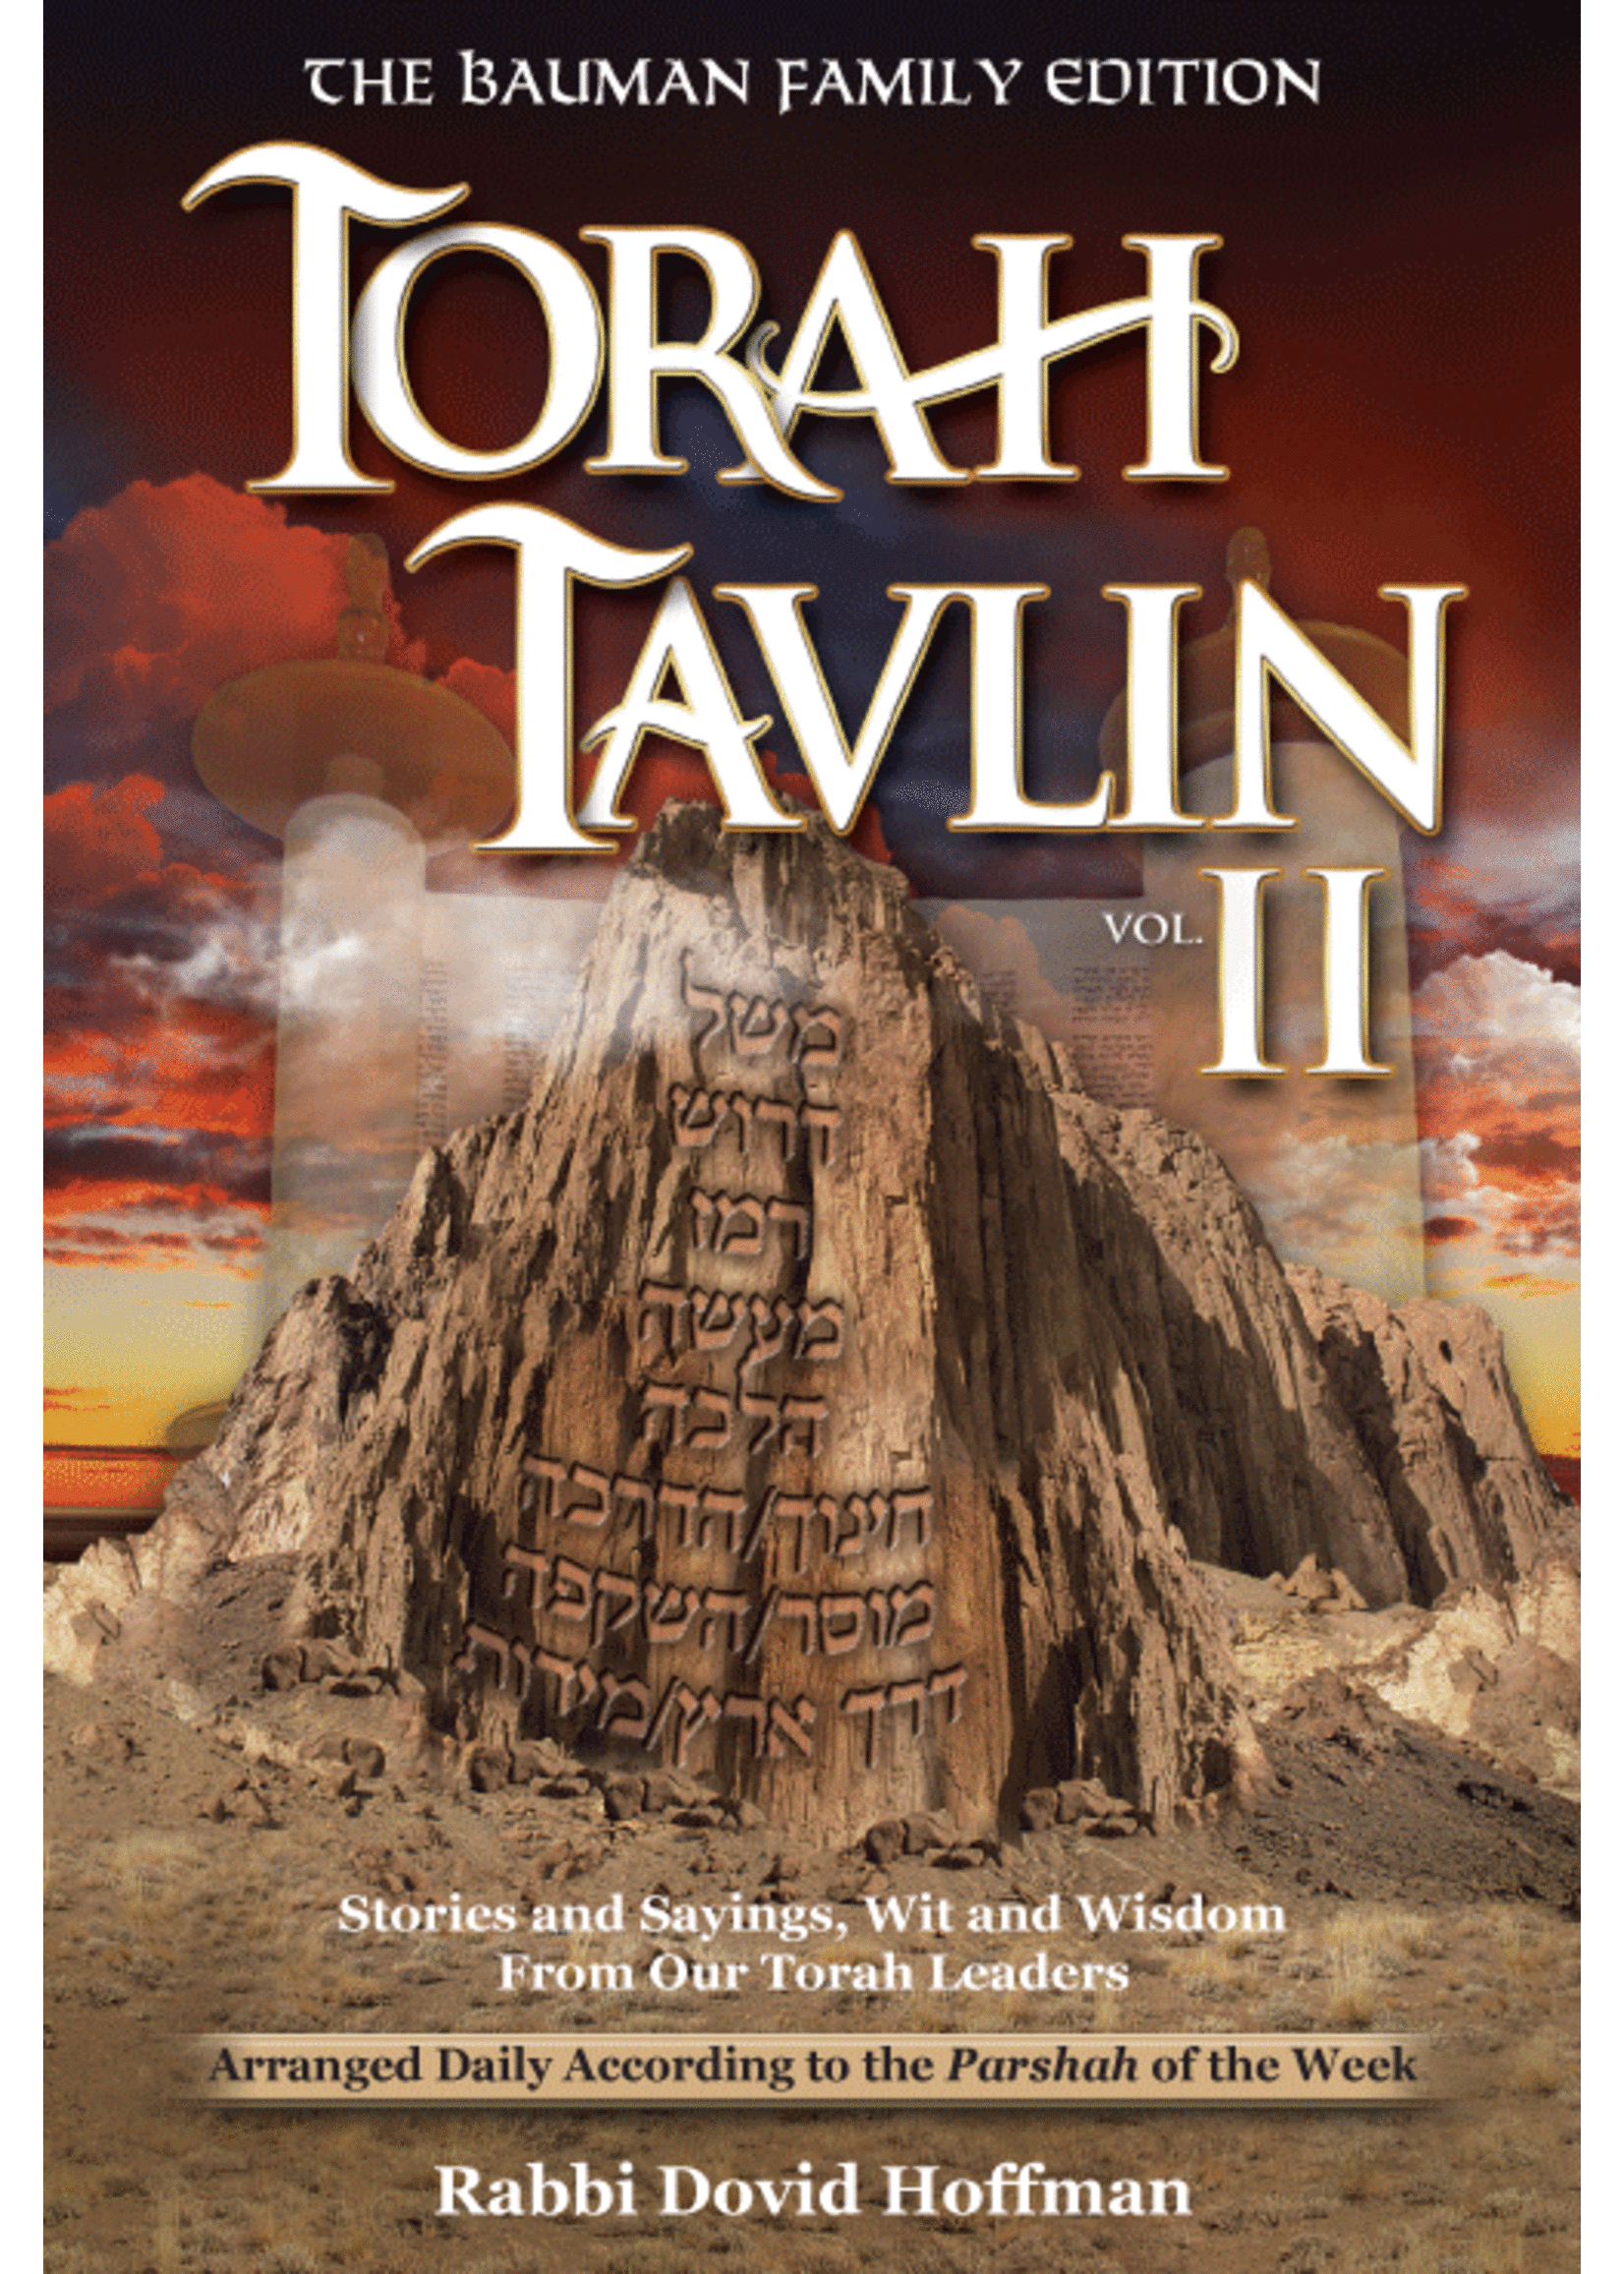 TORAH TAVLIN 2